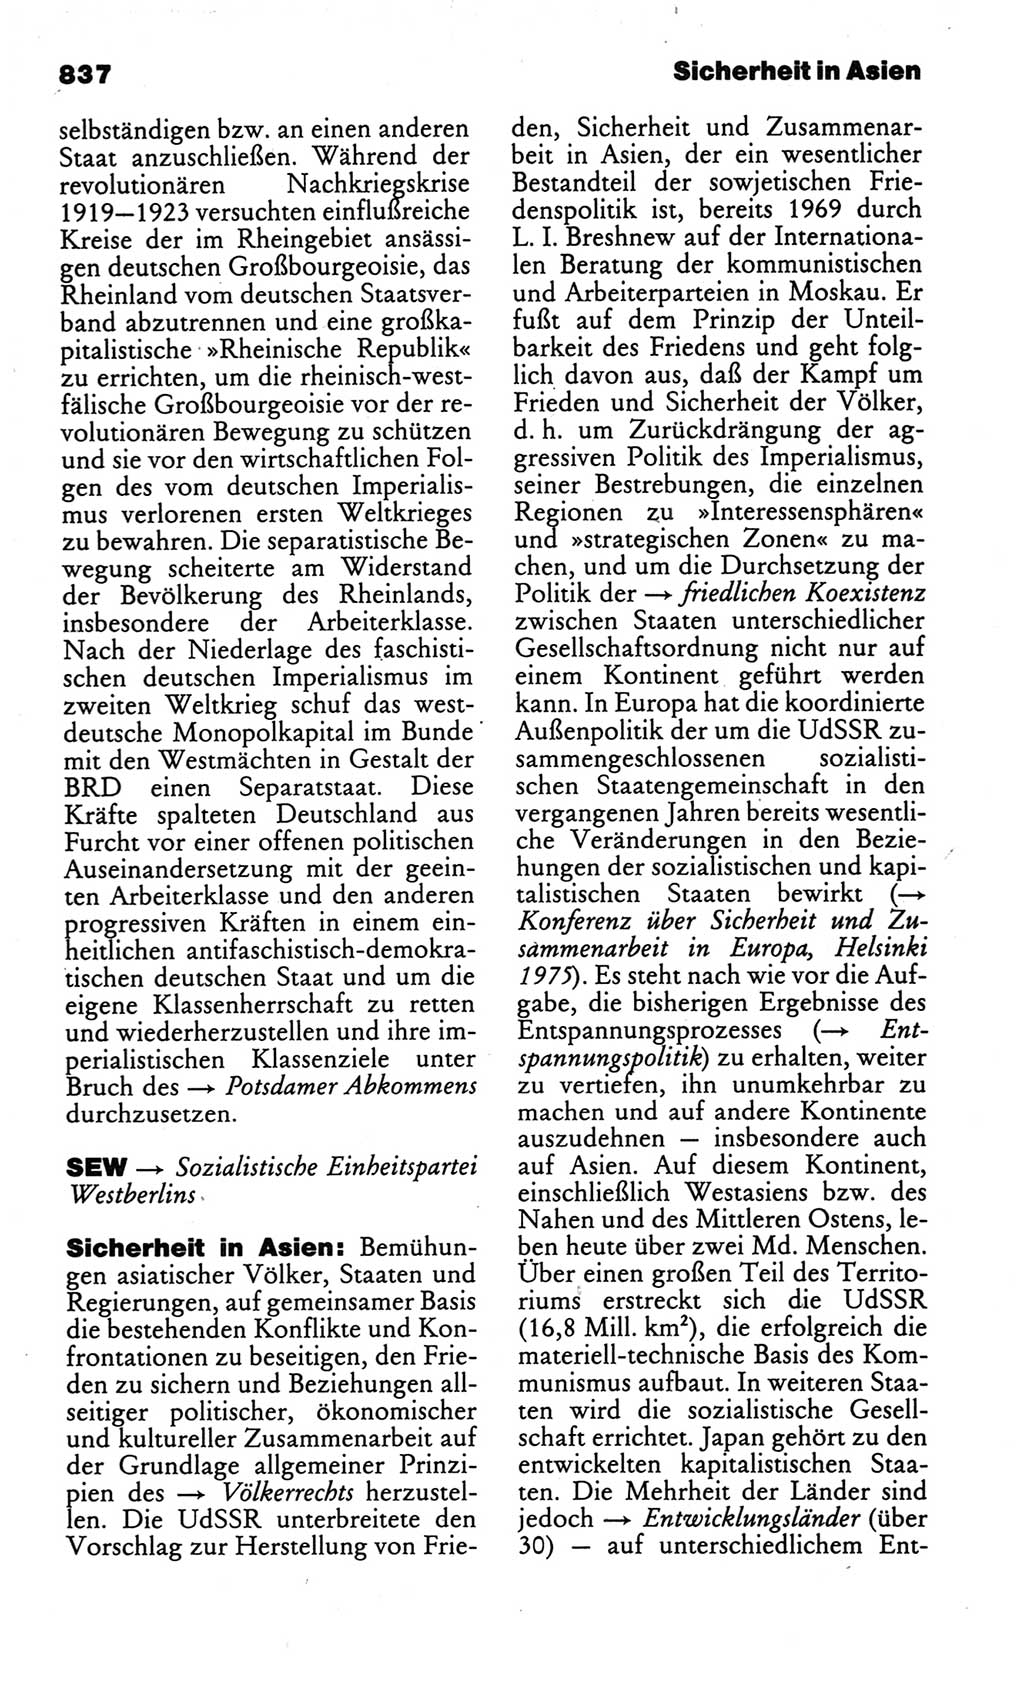 Kleines politisches Wörterbuch [Deutsche Demokratische Republik (DDR)] 1986, Seite 837 (Kl. pol. Wb. DDR 1986, S. 837)